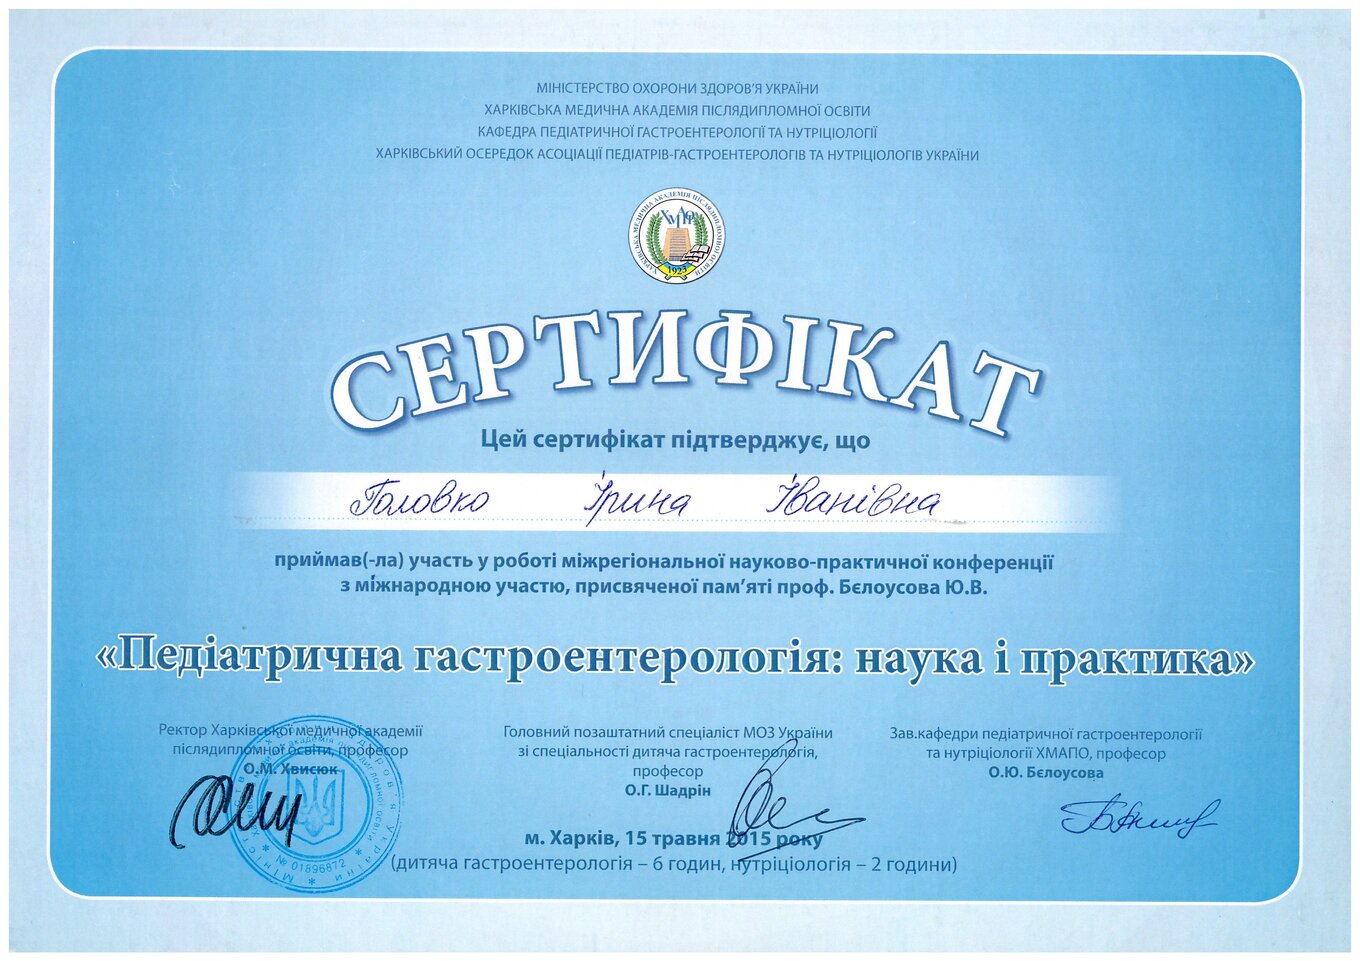 Golovko Irina Ivanivna sertifikat8